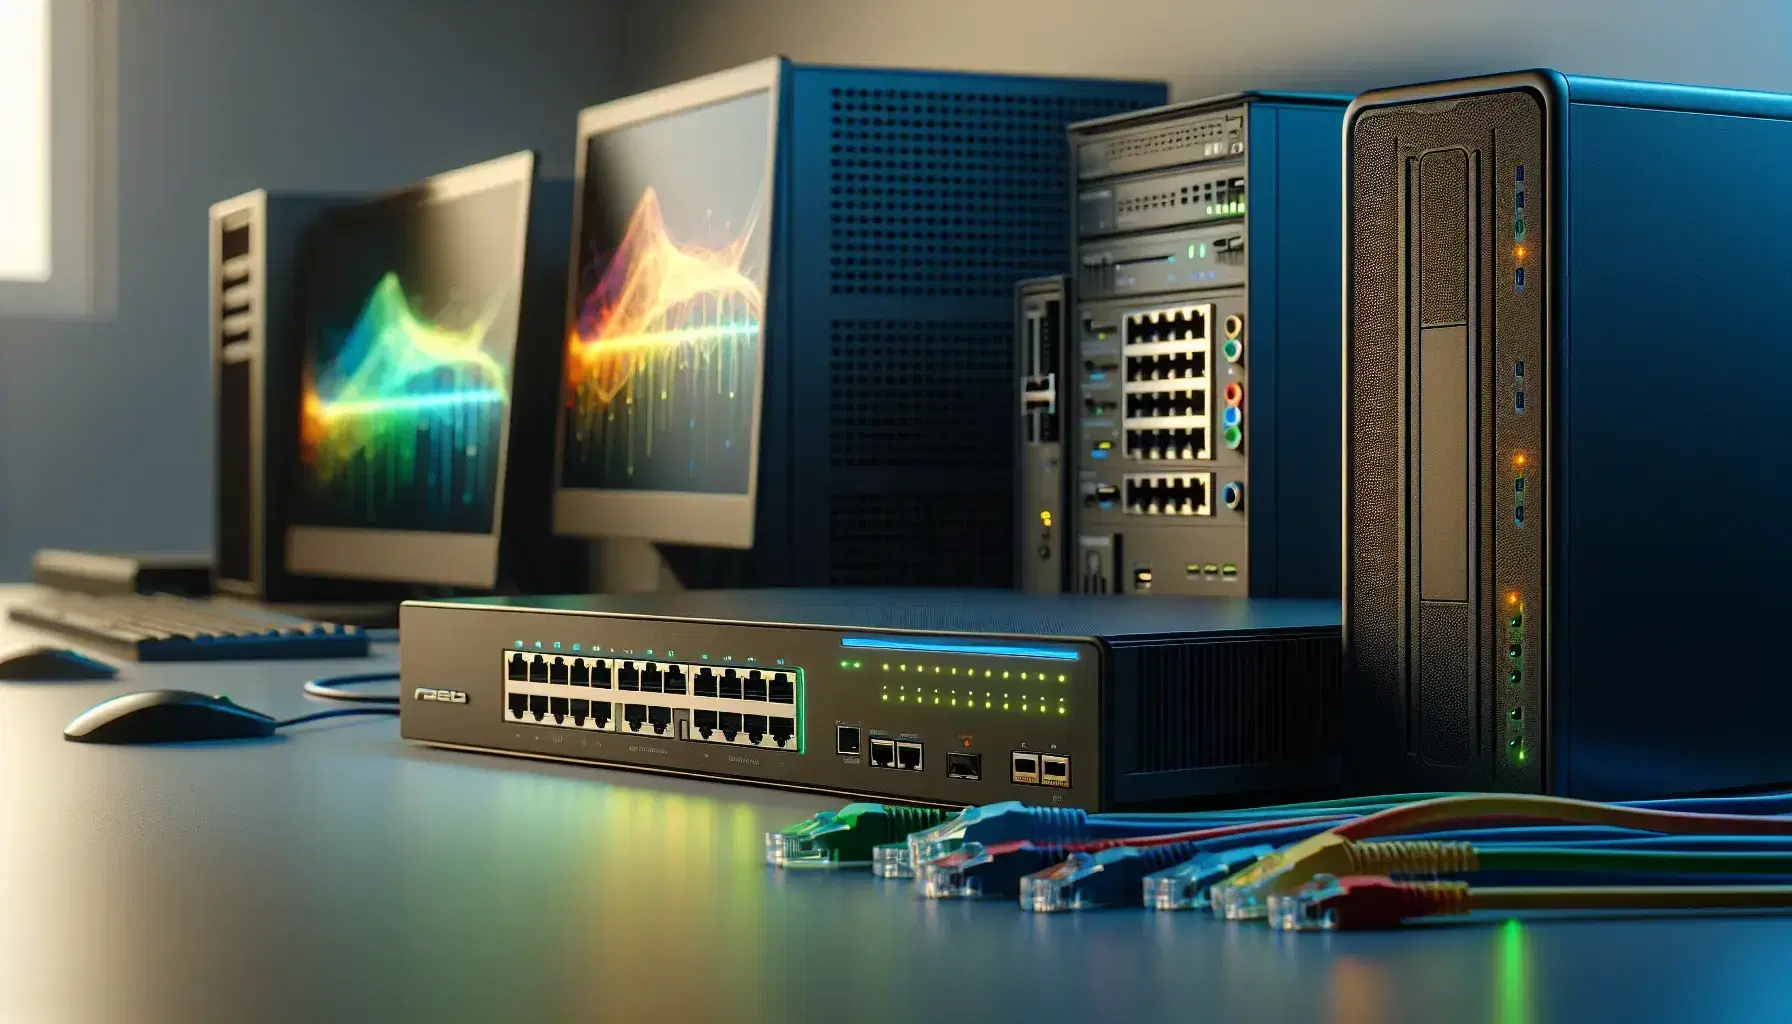 Equipo de red con router negro, switch con cables Ethernet coloridos y computadora de escritorio gris junto a monitor y laptop plateada en fondo claro.